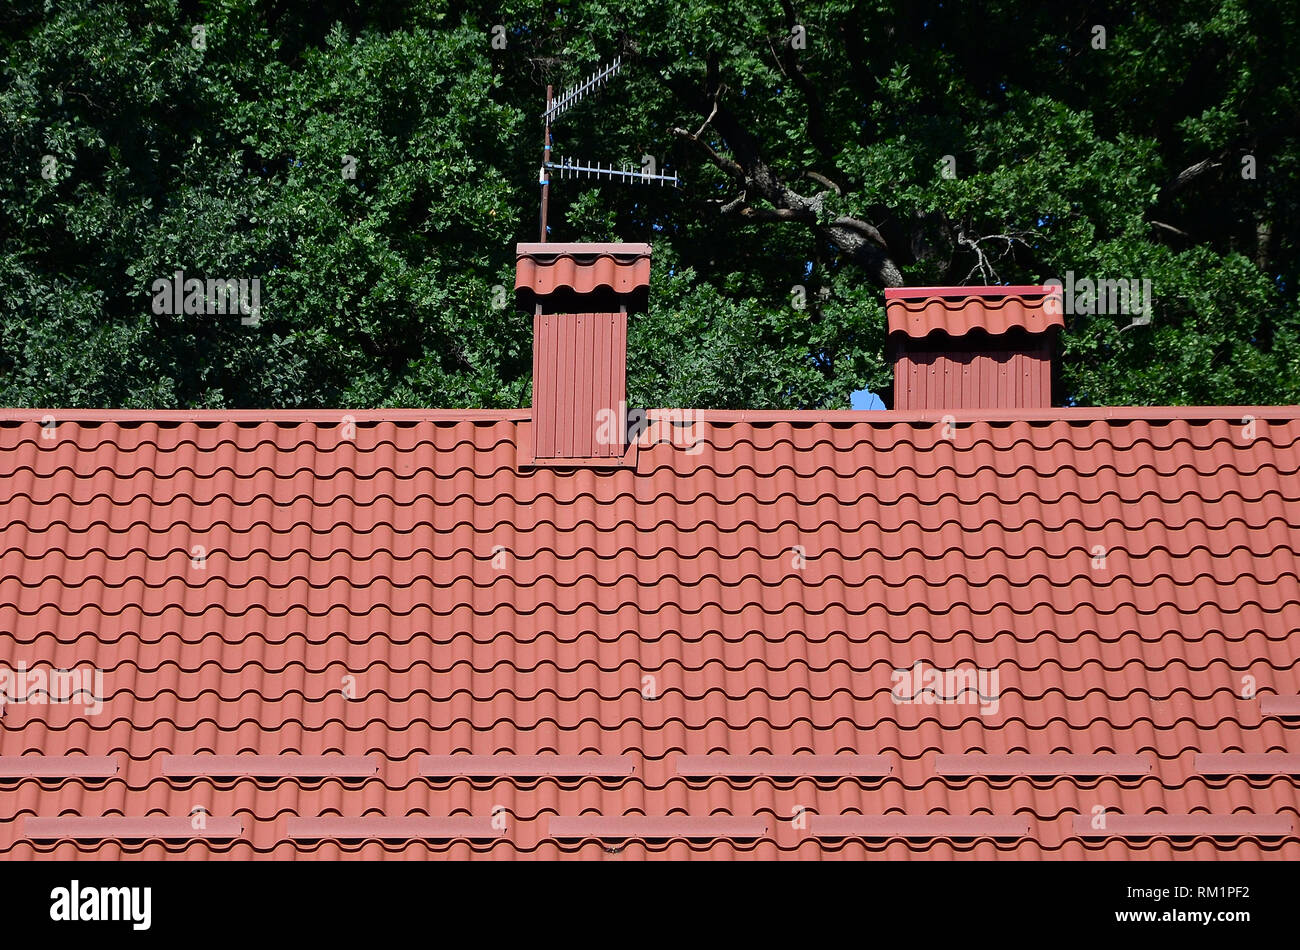 Hochwertige rote Metall Fliesen Dach eines Hauses gegen grüne Bäume Hintergrund Stockfoto